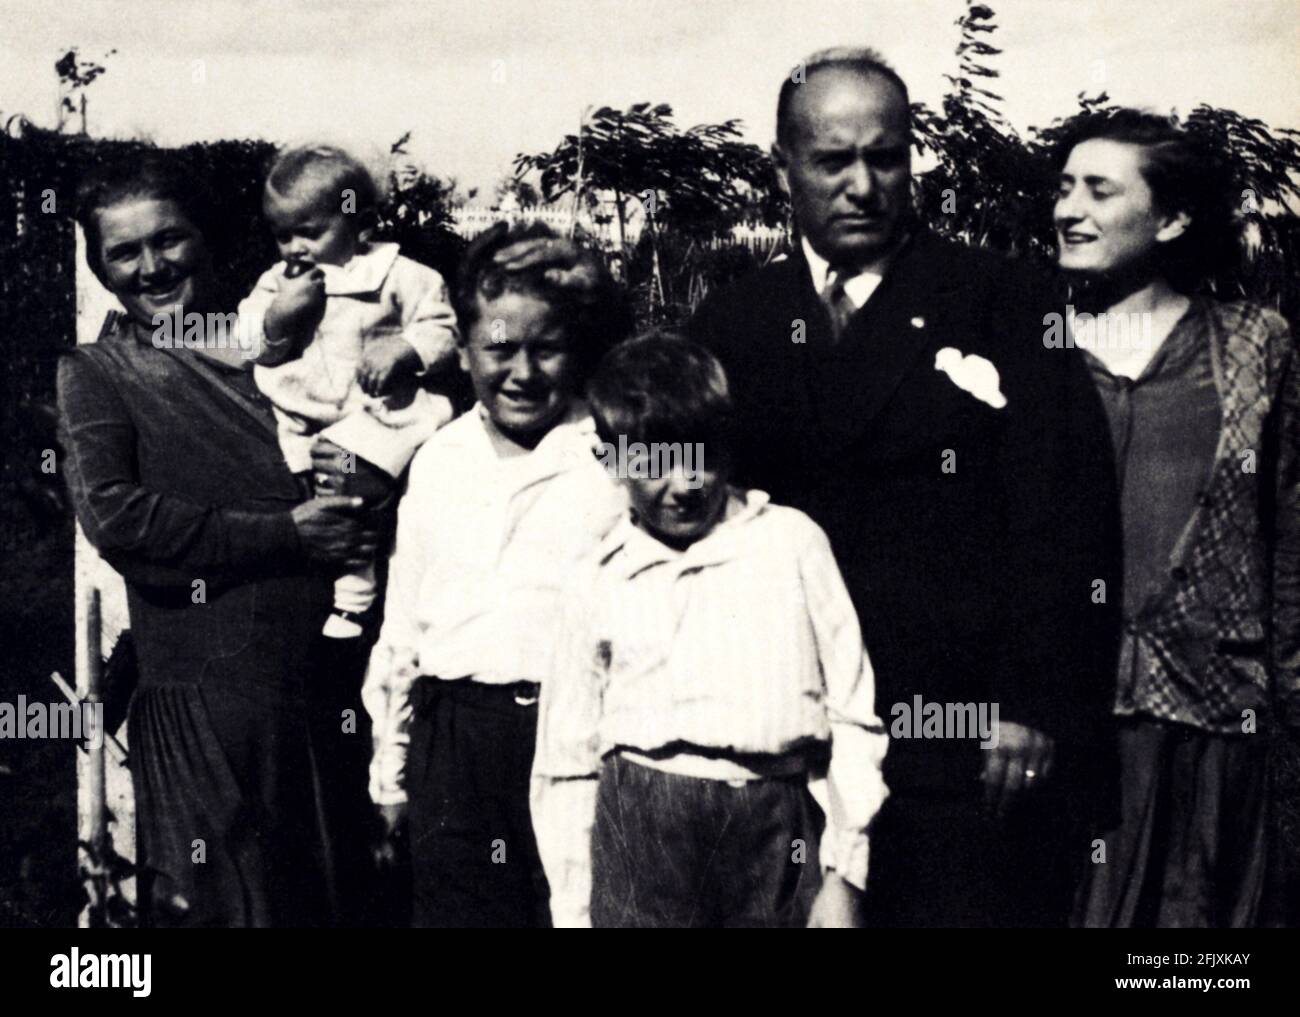 1928 , ITALIA : IL dittatore fascista italiano BENITO MUSSOLINI con la sua famiglia. La moglie RACHELE e i figli : ROMANO , VITTORIO , BRUNO ed EDDA ciano - FASCISMO - FASCISMO - FASCISTA - FASCISTA - seconda Guerra Mondiale - seconda Guerra Mondiale - seconda Guerra Mondiale - SECONDA Guerra Mondiale - SECONDA Guerra MONDIALE - SECONDA Guerra Mondiale - Famiglia - marito e moglie - figli ---- Archivio GBB Foto Stock